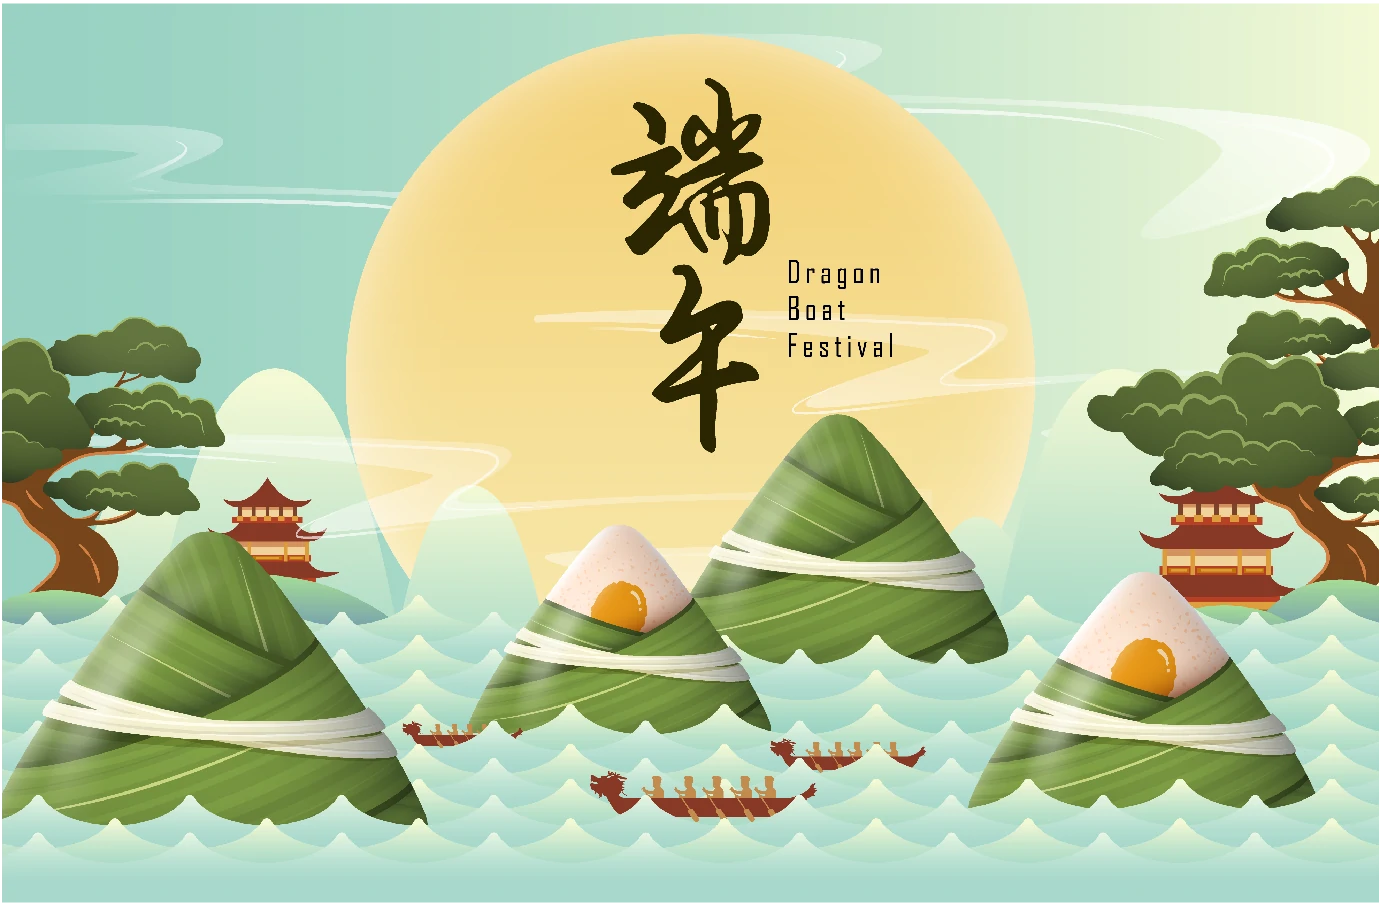 中国传统节日端午节端午安康赛龙舟包粽子插画海报AI矢量设计素材【020】